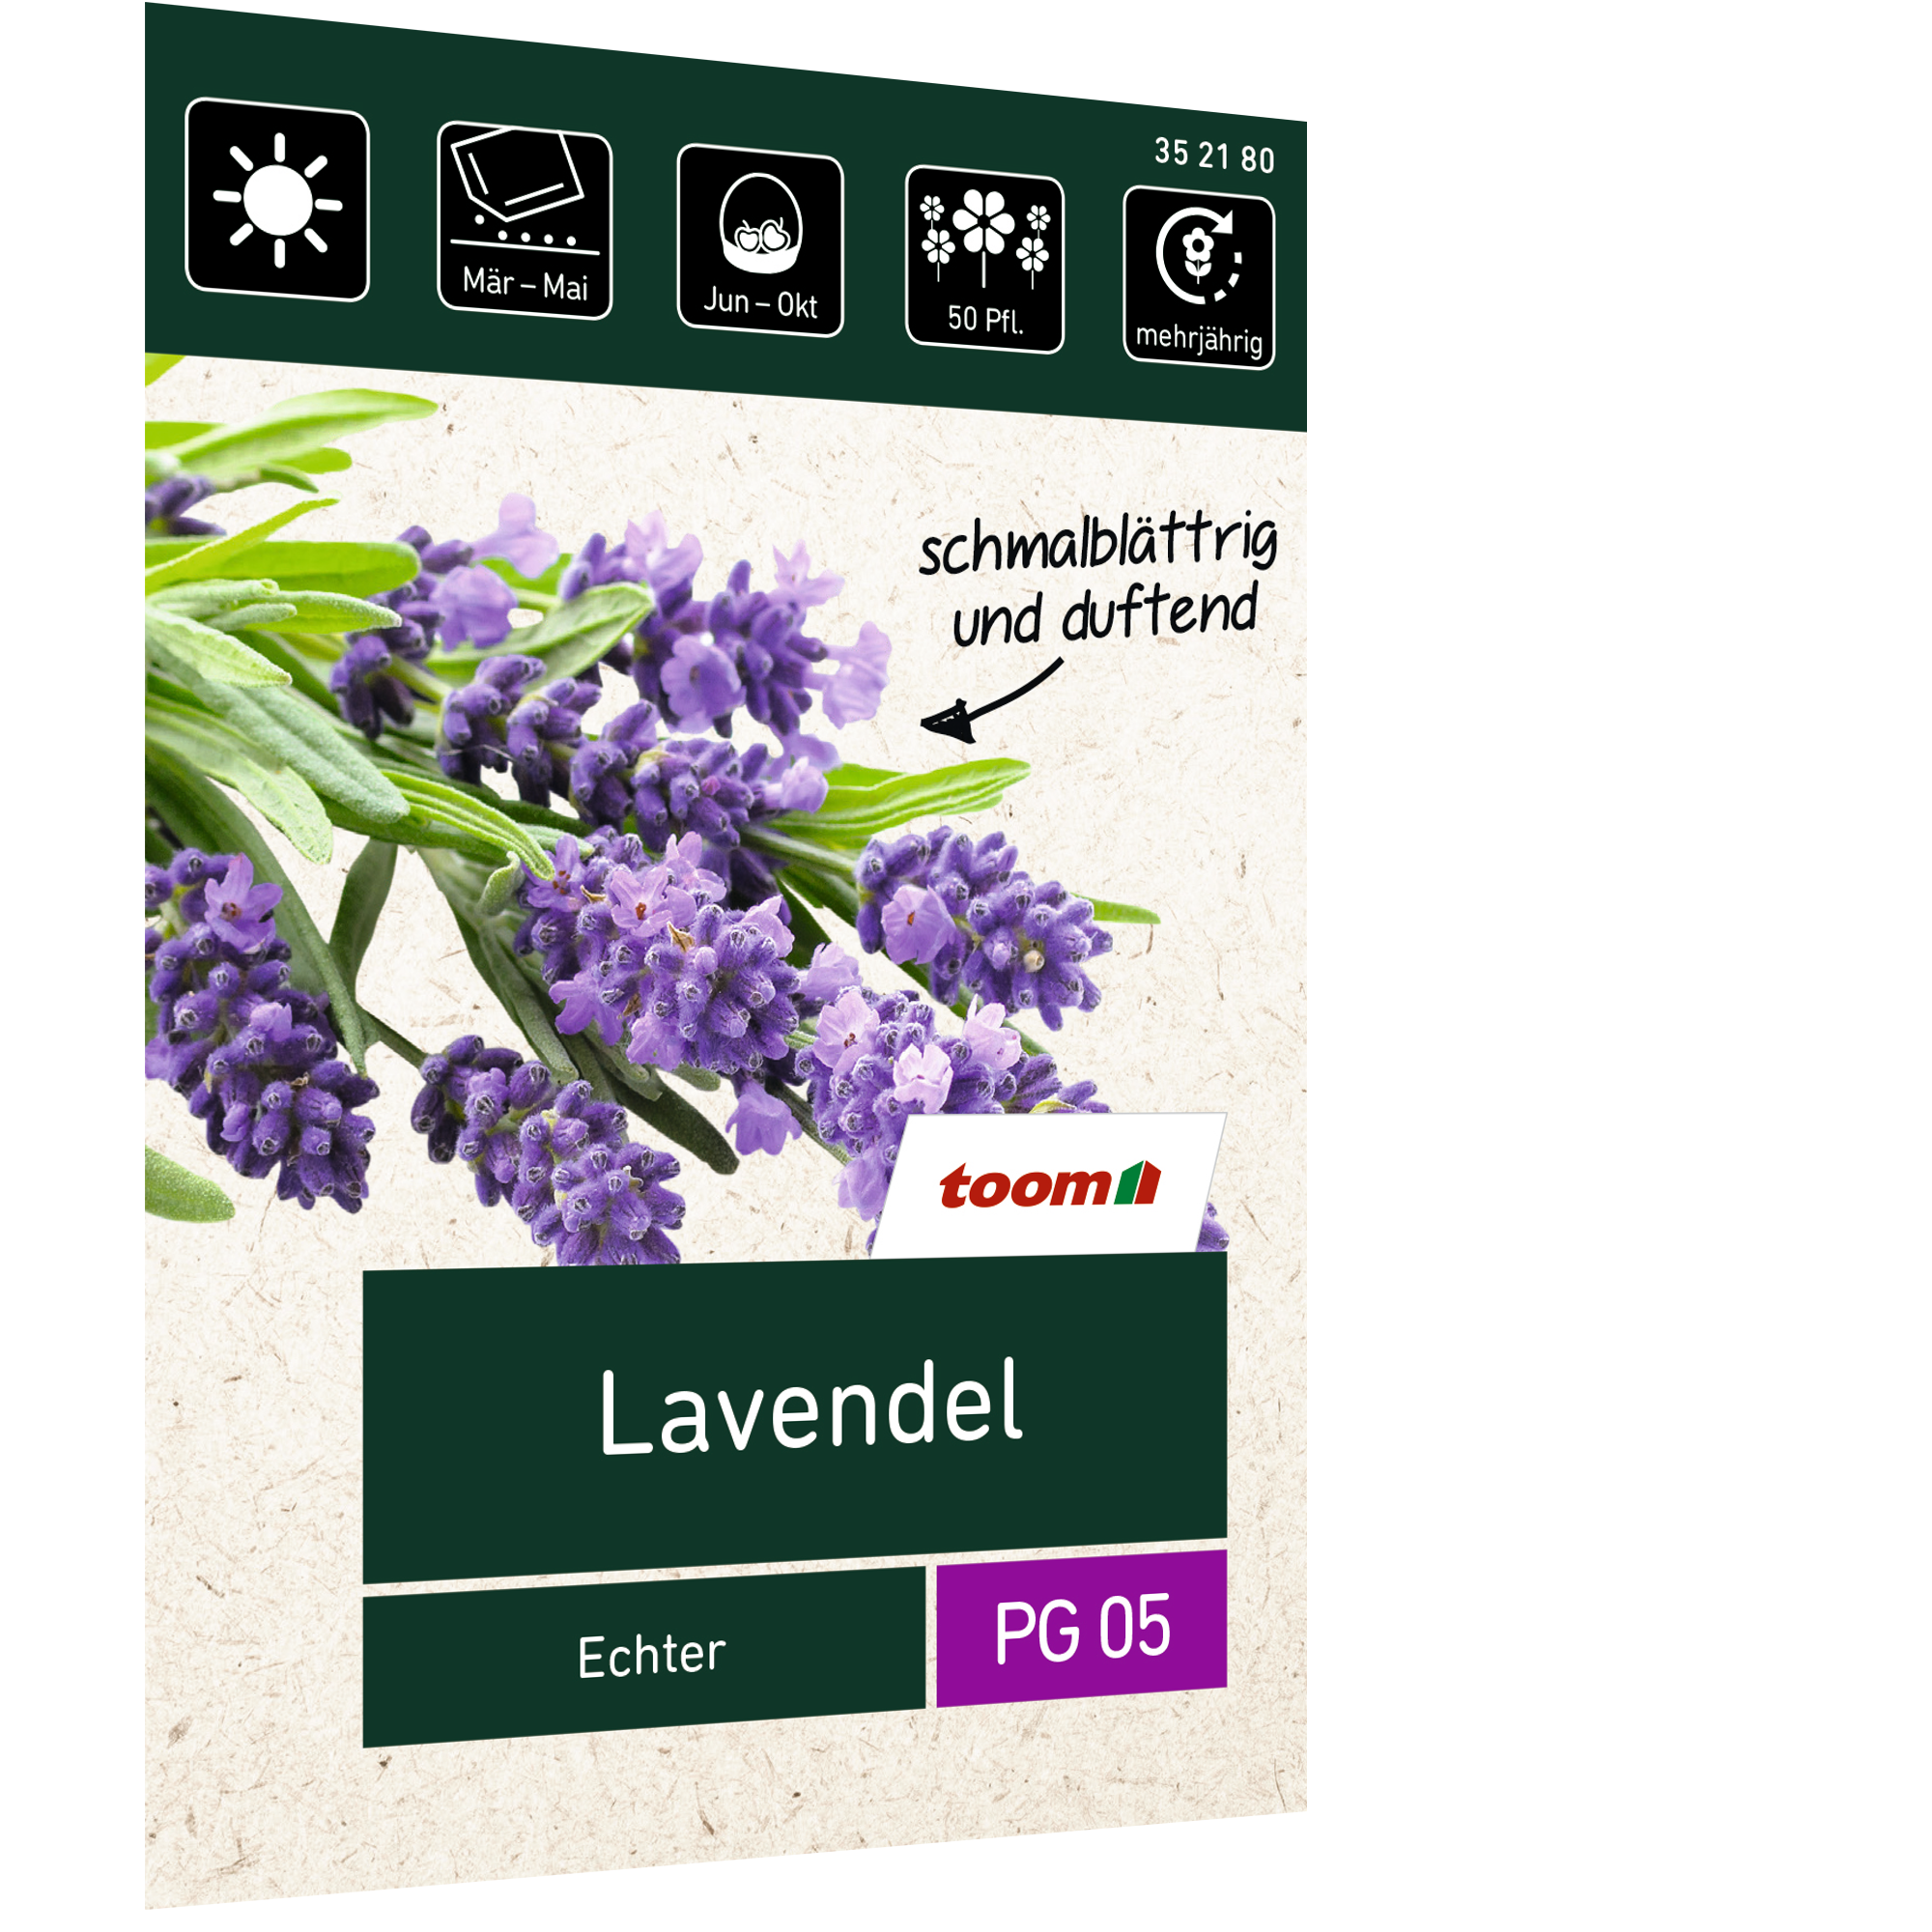 Lavendel 'Echter' + product picture